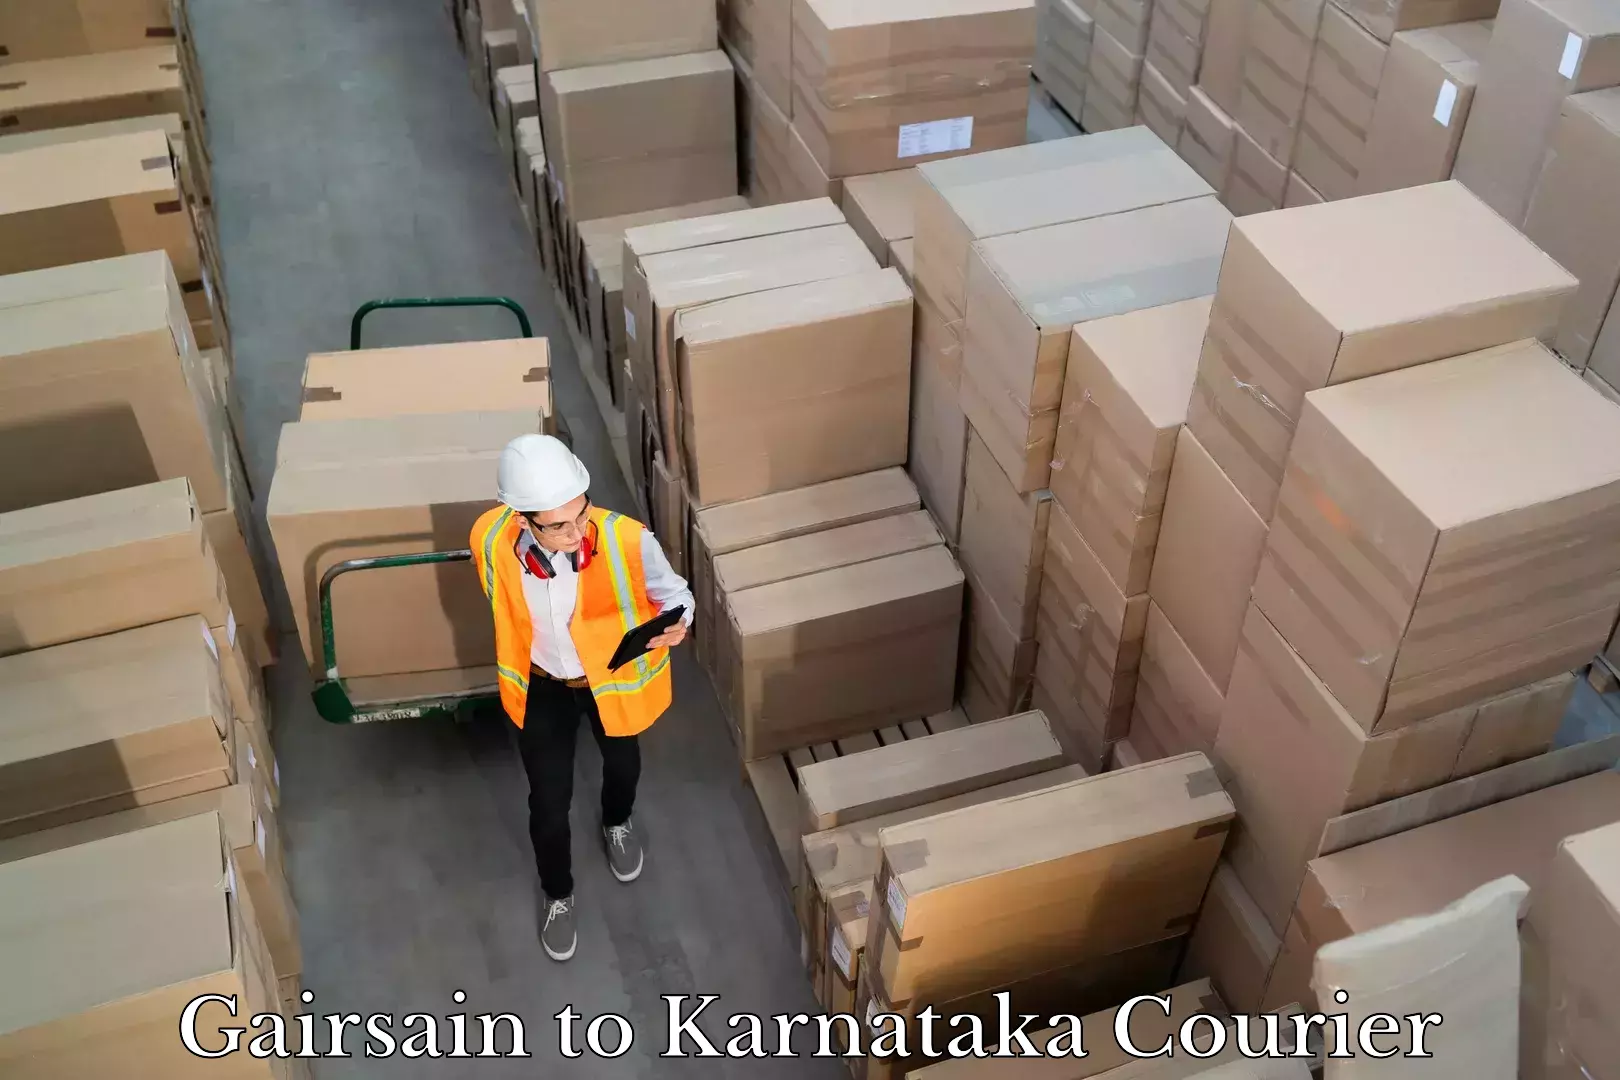 Small business couriers in Gairsain to Karnataka